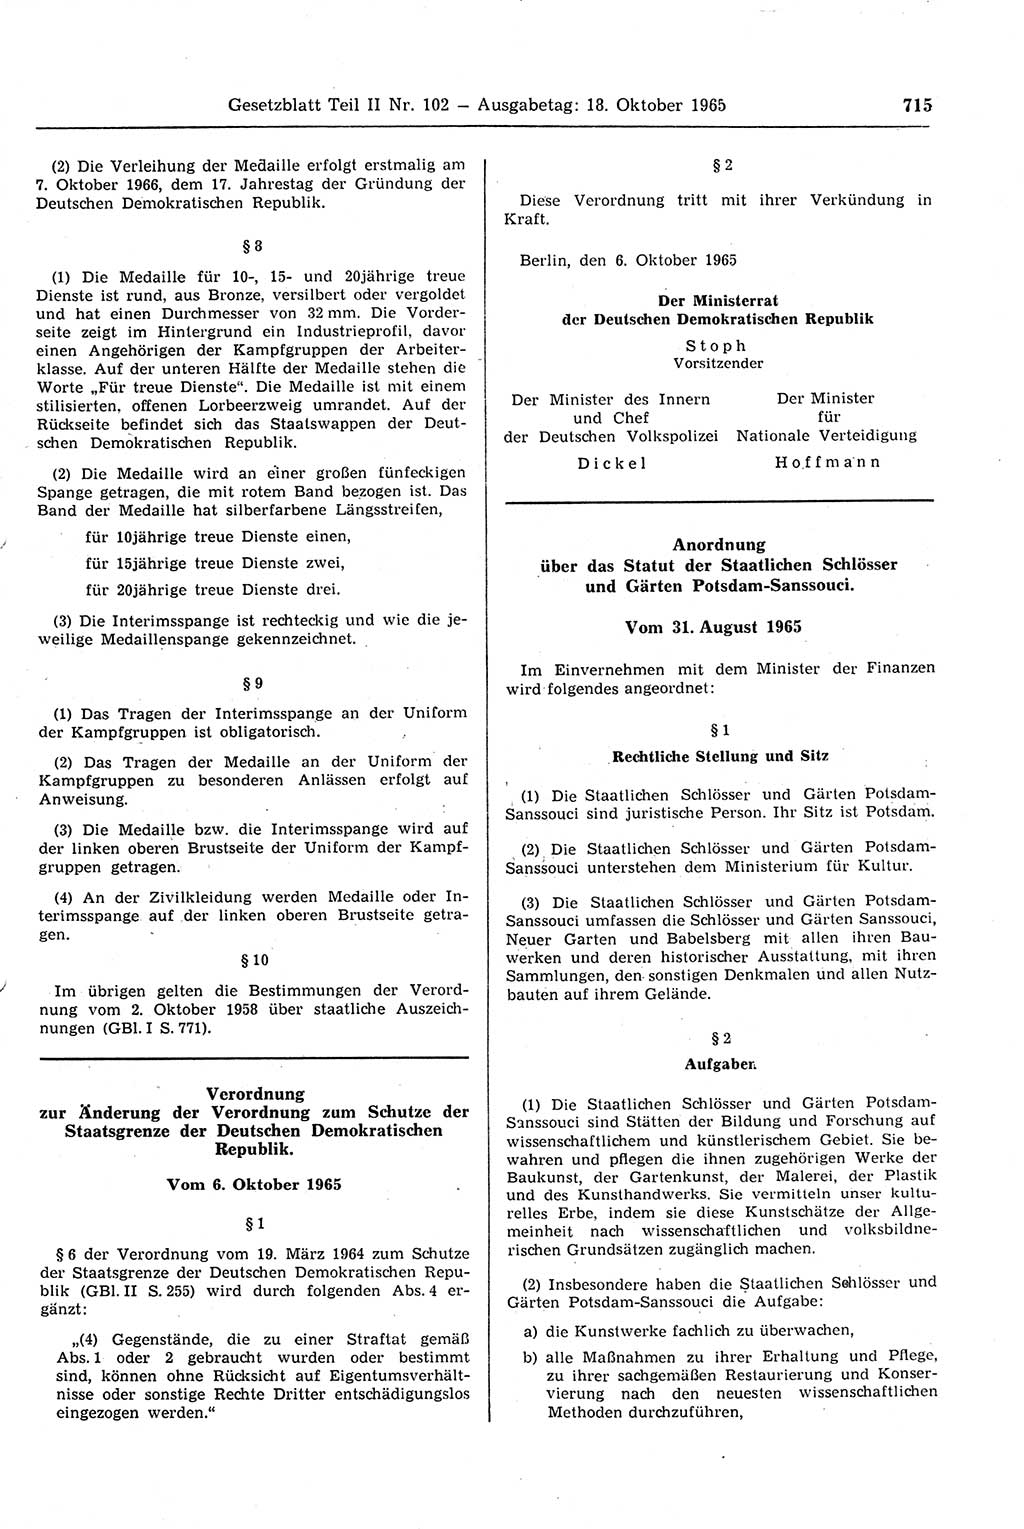 Gesetzblatt (GBl.) der Deutschen Demokratischen Republik (DDR) Teil ⅠⅠ 1965, Seite 715 (GBl. DDR ⅠⅠ 1965, S. 715)